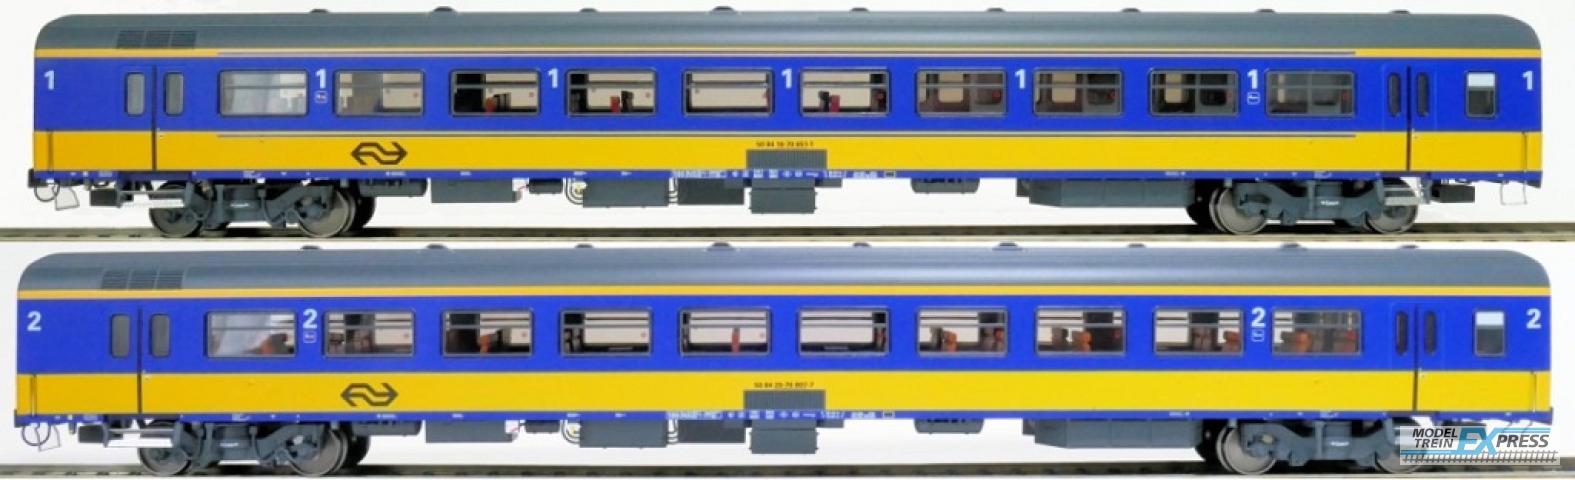 Exact-train 11061 2er-Set NS ICR (Originalversion) für den Nachverkehr nach Belgien, Deutschland und Luxembourg Reisezugwagen A und Reisezugwagen B ( Alte Farbe Gelb / Blau), Ep. IV